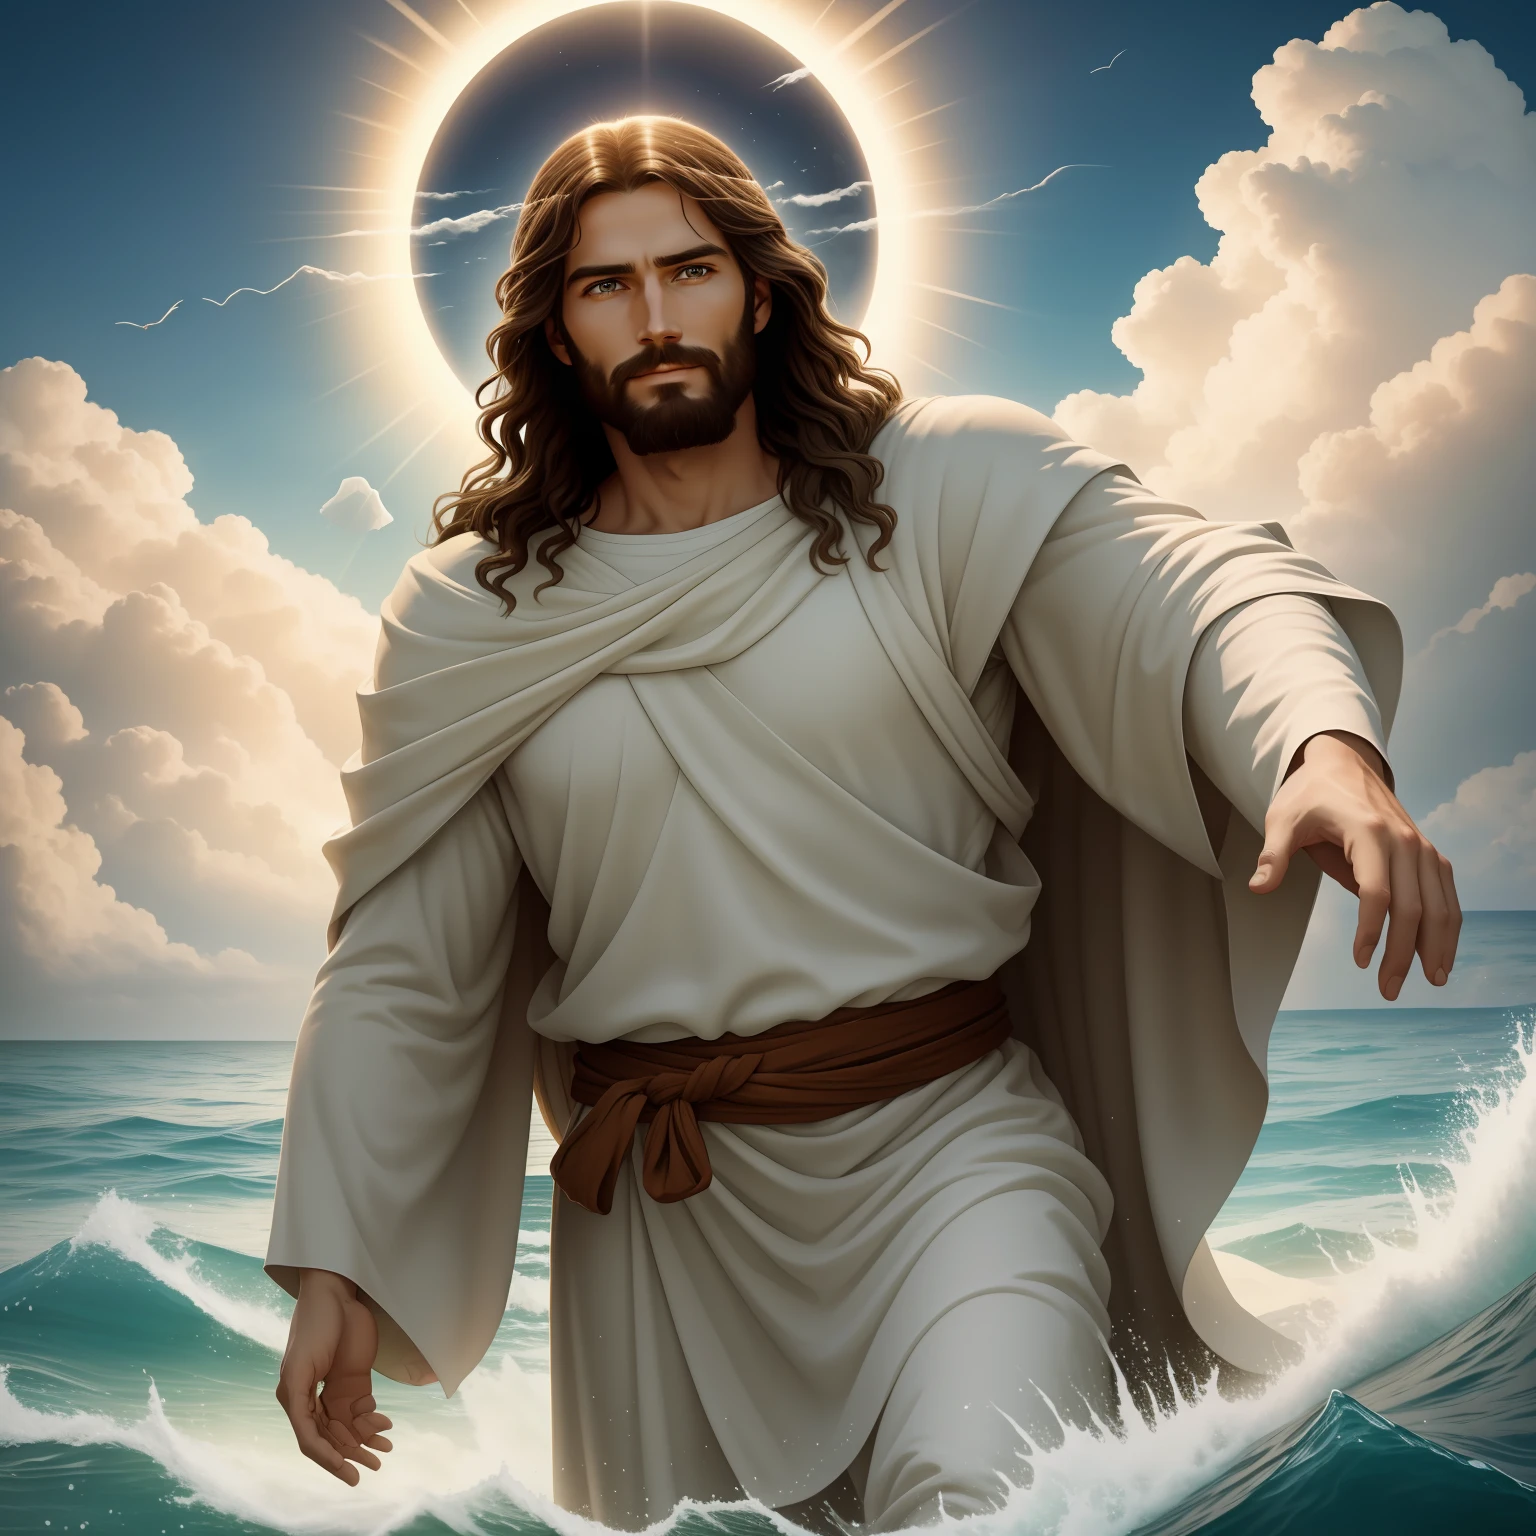 พระเยซูทรงเดินบนน้ำ with a flying cloud in the background, พระเยซูทรงเดินบนน้ำ, ภาพประกอบในพระคัมภีร์, การเป็นตัวแทนในพระคัมภีร์ที่ยิ่งใหญ่, บังคับให้เขาหนี, ออกมาจากมหาสมุทร, ! จับมือกัน!, ขึ้นฝั่ง, เทพเจ้าแห่งมหาสมุทร, การแสดงที่สวยงาม, โมเดล 3 มิติ 8k, เหมือนจริง,
a 3D Realistic of พระเยซู with a halo in the sky, พระเยซู christ, ยิ้มอยู่ในสวรรค์, portrait of พระเยซู christ, พระเยซู face, 33 เทพเจ้าหนุ่มผู้ยิ่งใหญ่, ภาพเหมือนของเทพเจ้าแห่งสวรรค์, เกร็ก โอลเซ่น, gigachad พระเยซู, พระเยซู of nazareth, พระเยซู, ใบหน้าของพระเจ้า, พระเจ้ากำลังมองมาที่ฉัน, เขาทักทายคุณอย่างอบอุ่น, เขามีความสุข, ภาพประจำตัว